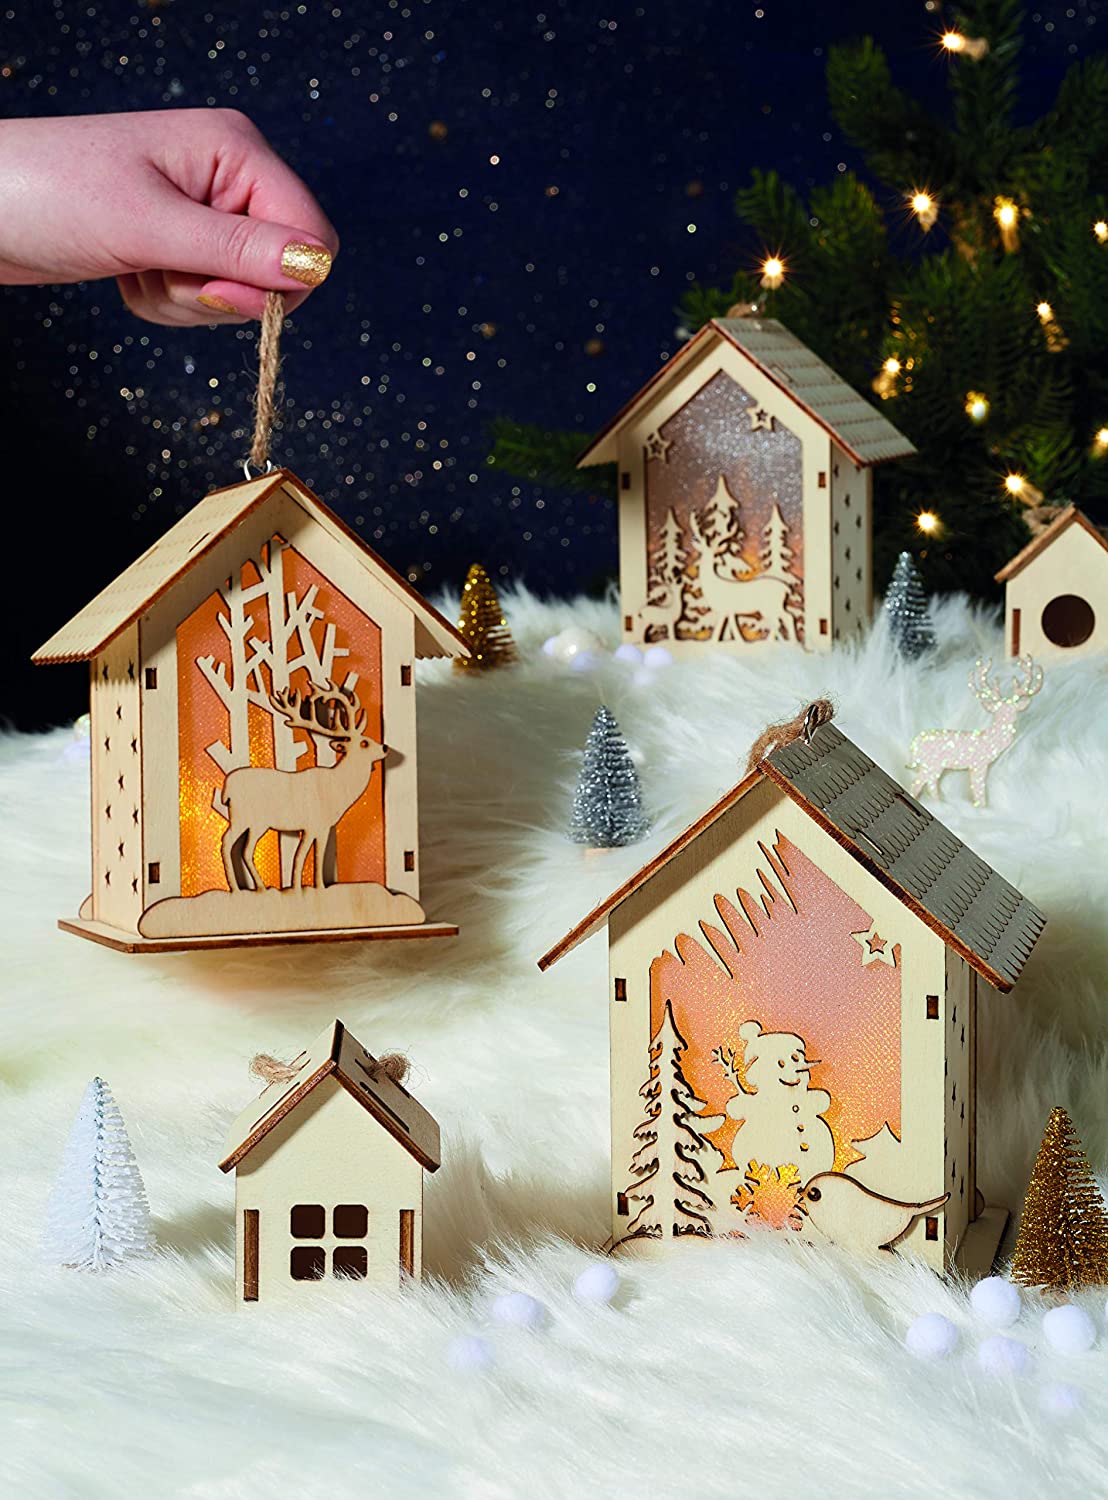 Décoration lumineuse pour Noël : 5 idées pour la maison